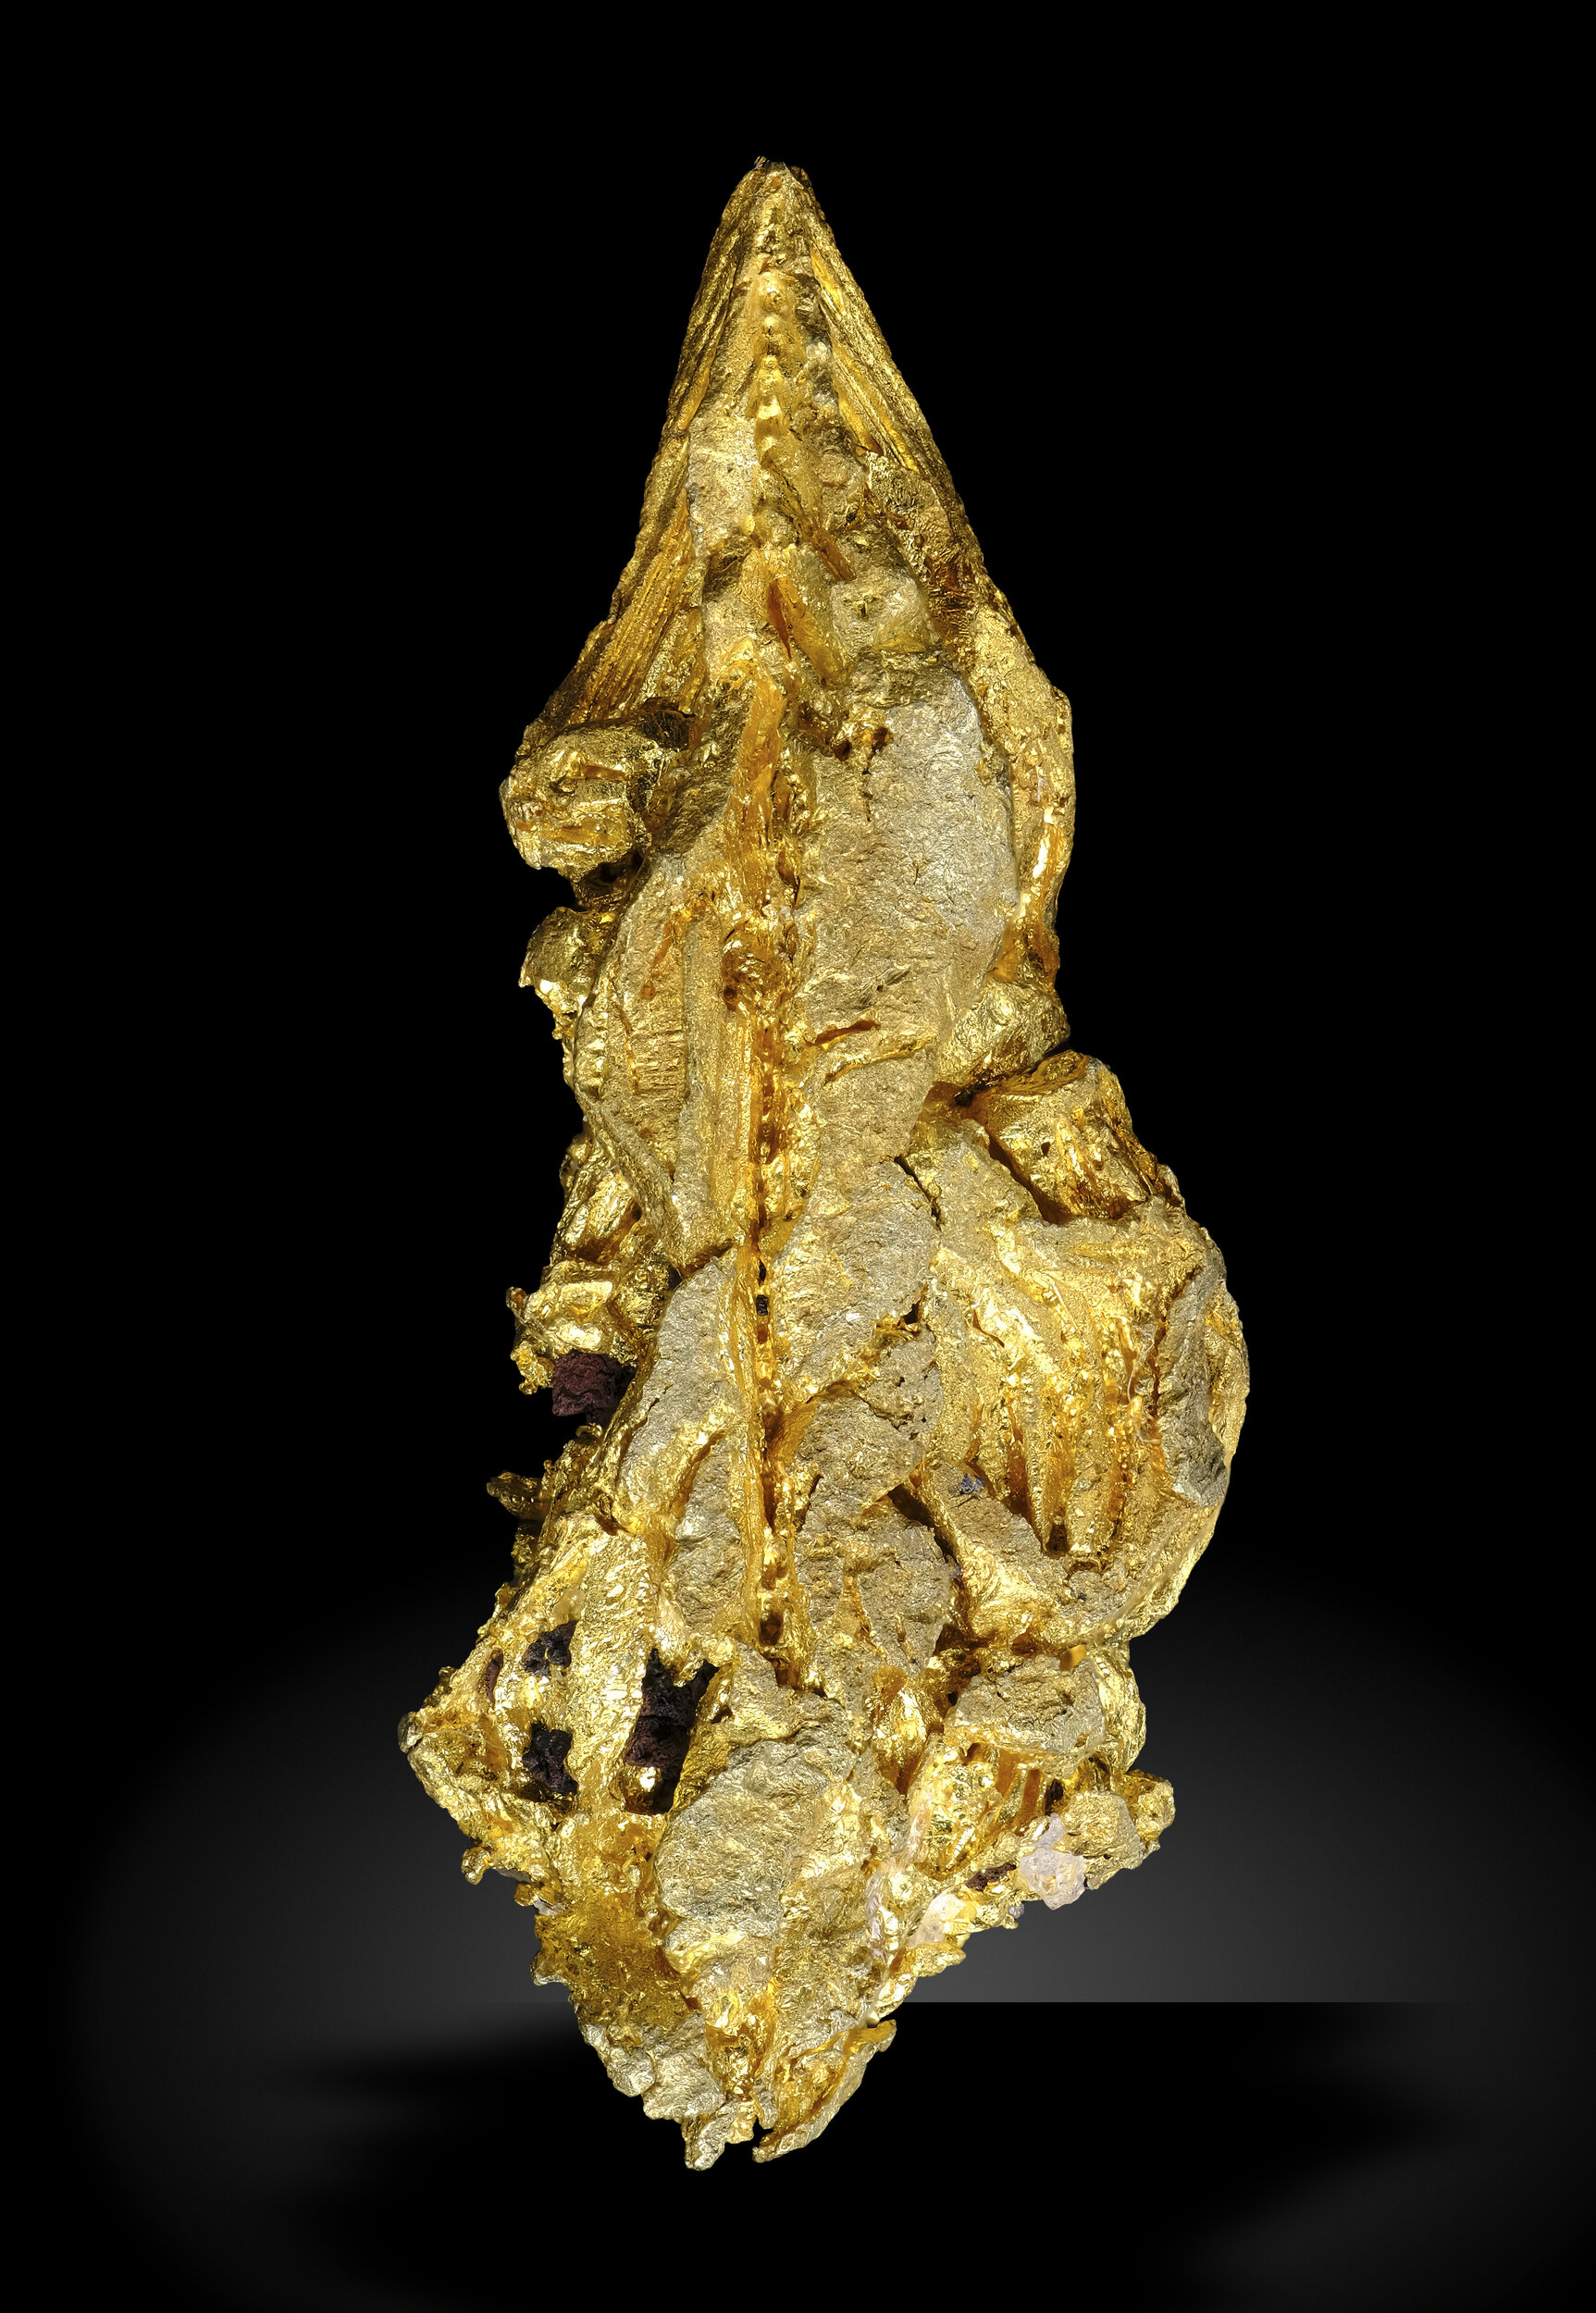 specimens/s_imagesAO5/Gold-MZY45AO5-0755r.jpg